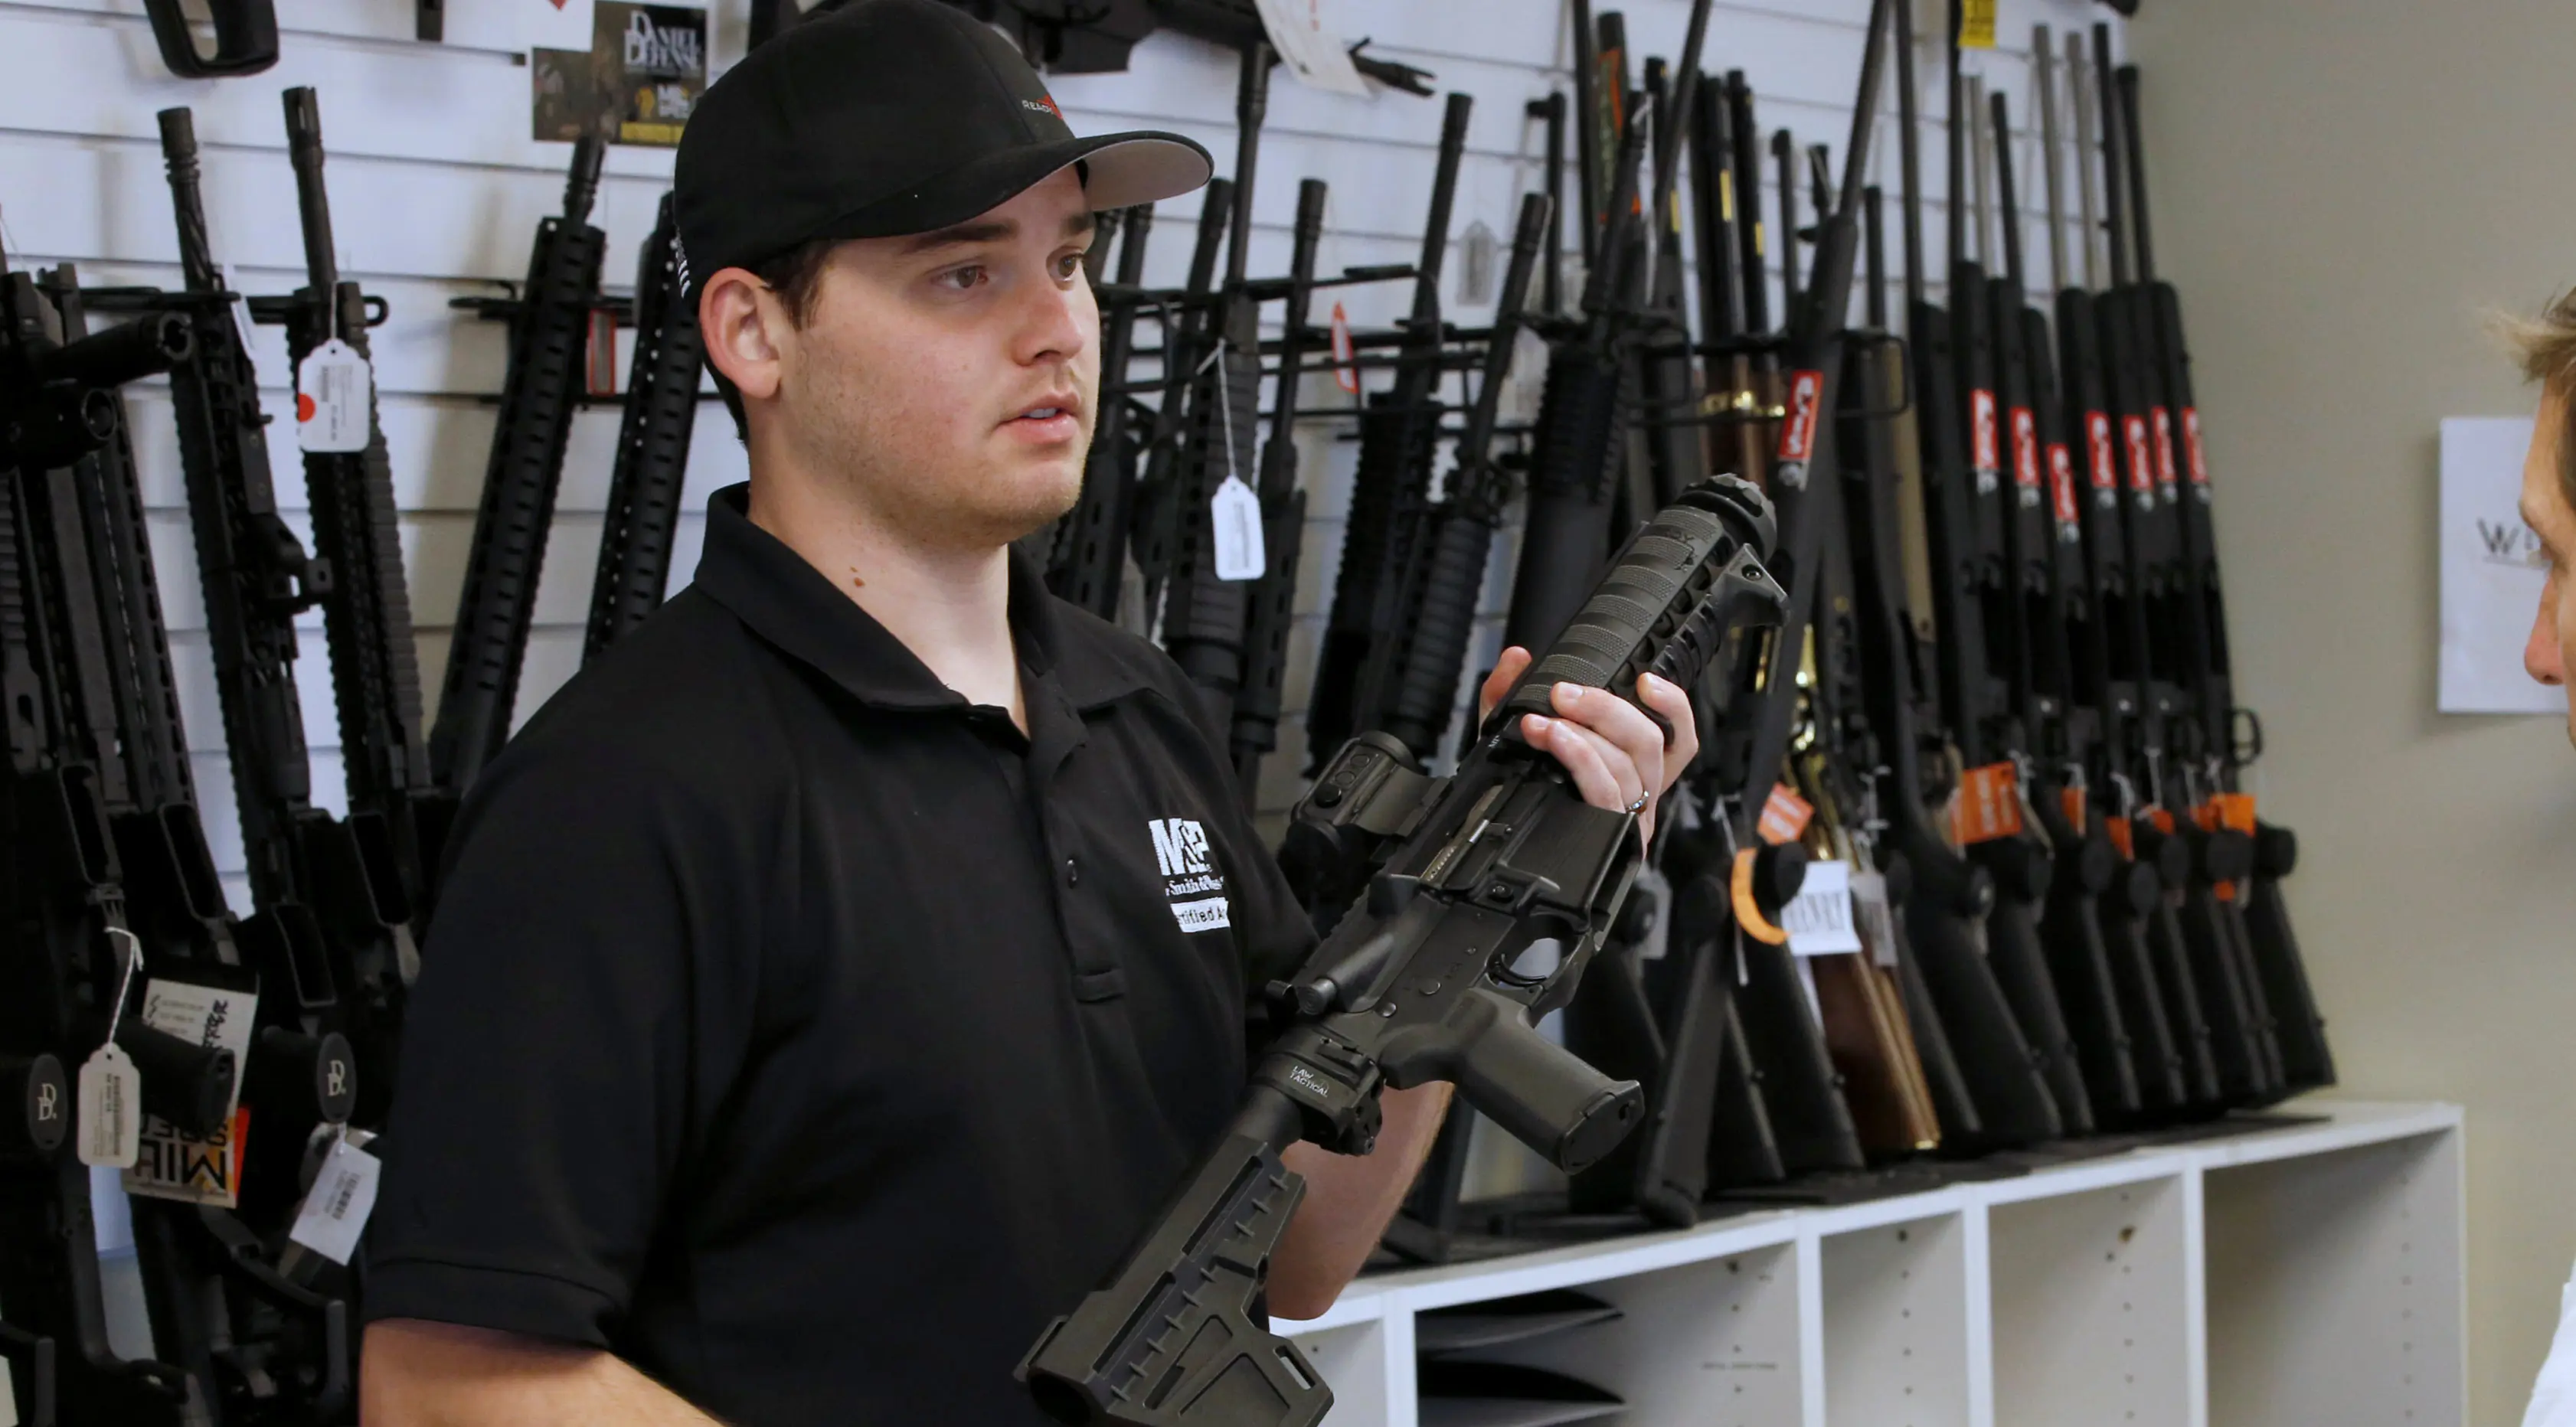 Penjaga toko senjata, Ryan Martinez  memegang senapan serbu AR-15 di toko senjata 